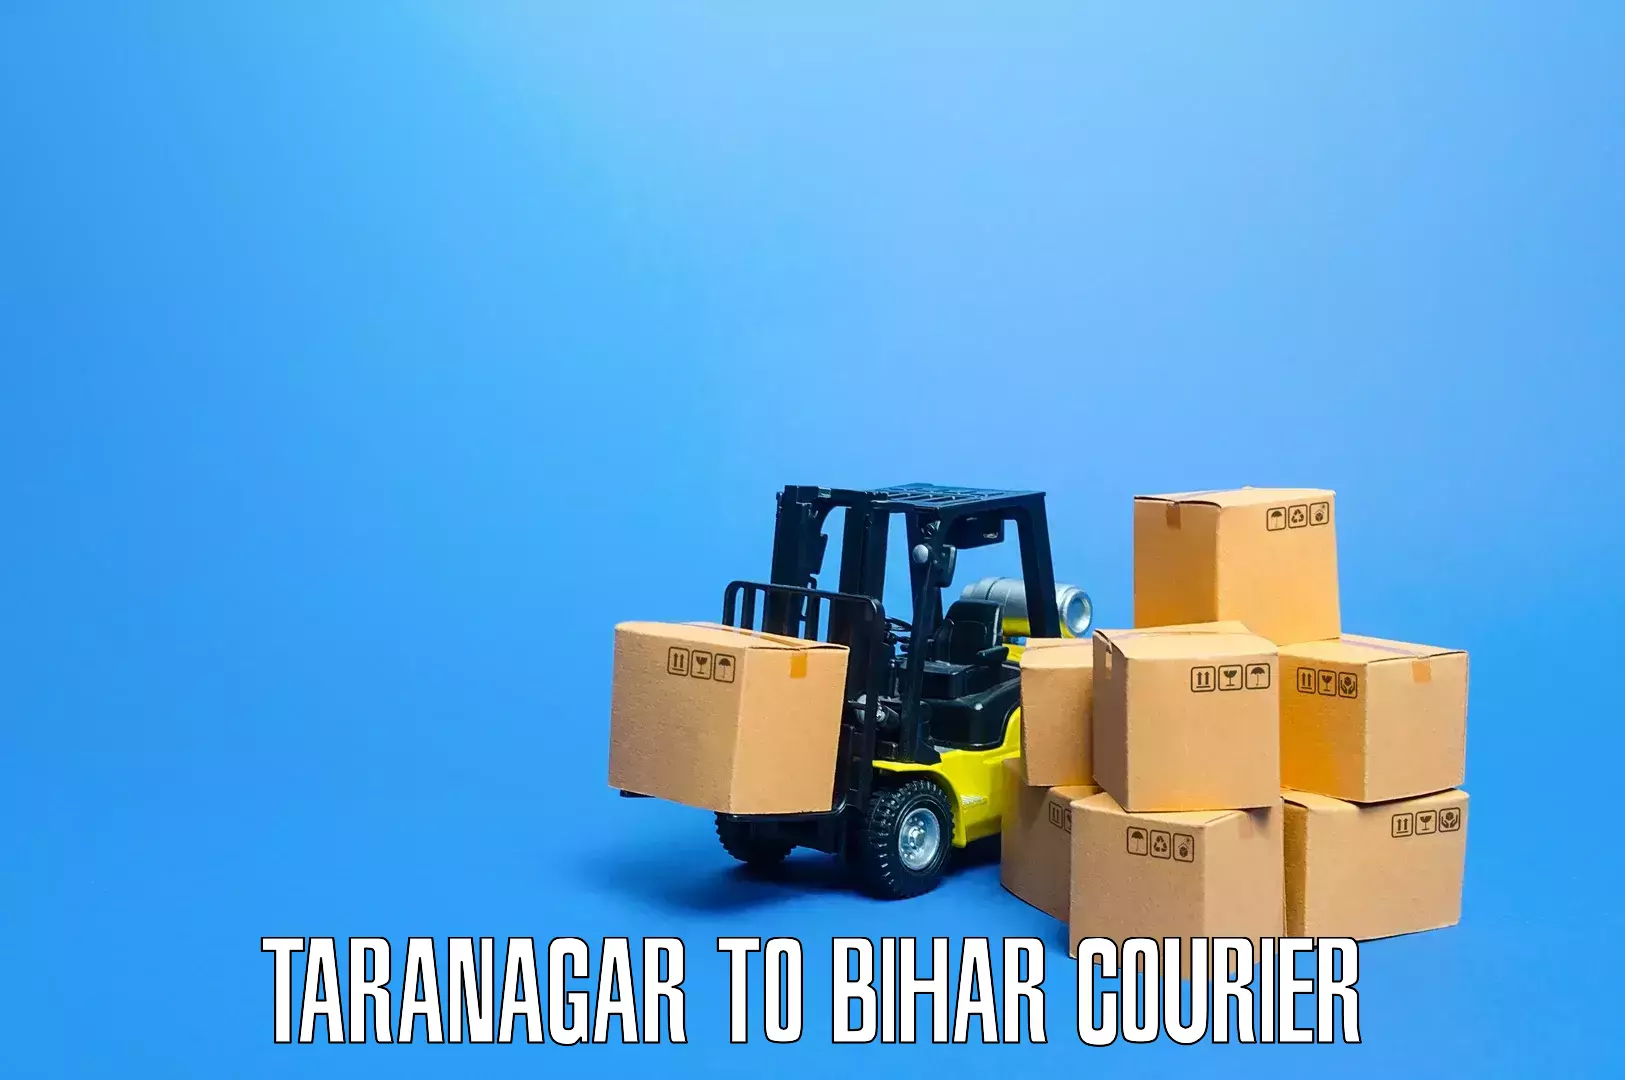 Reliable goods transport in Taranagar to Dinara